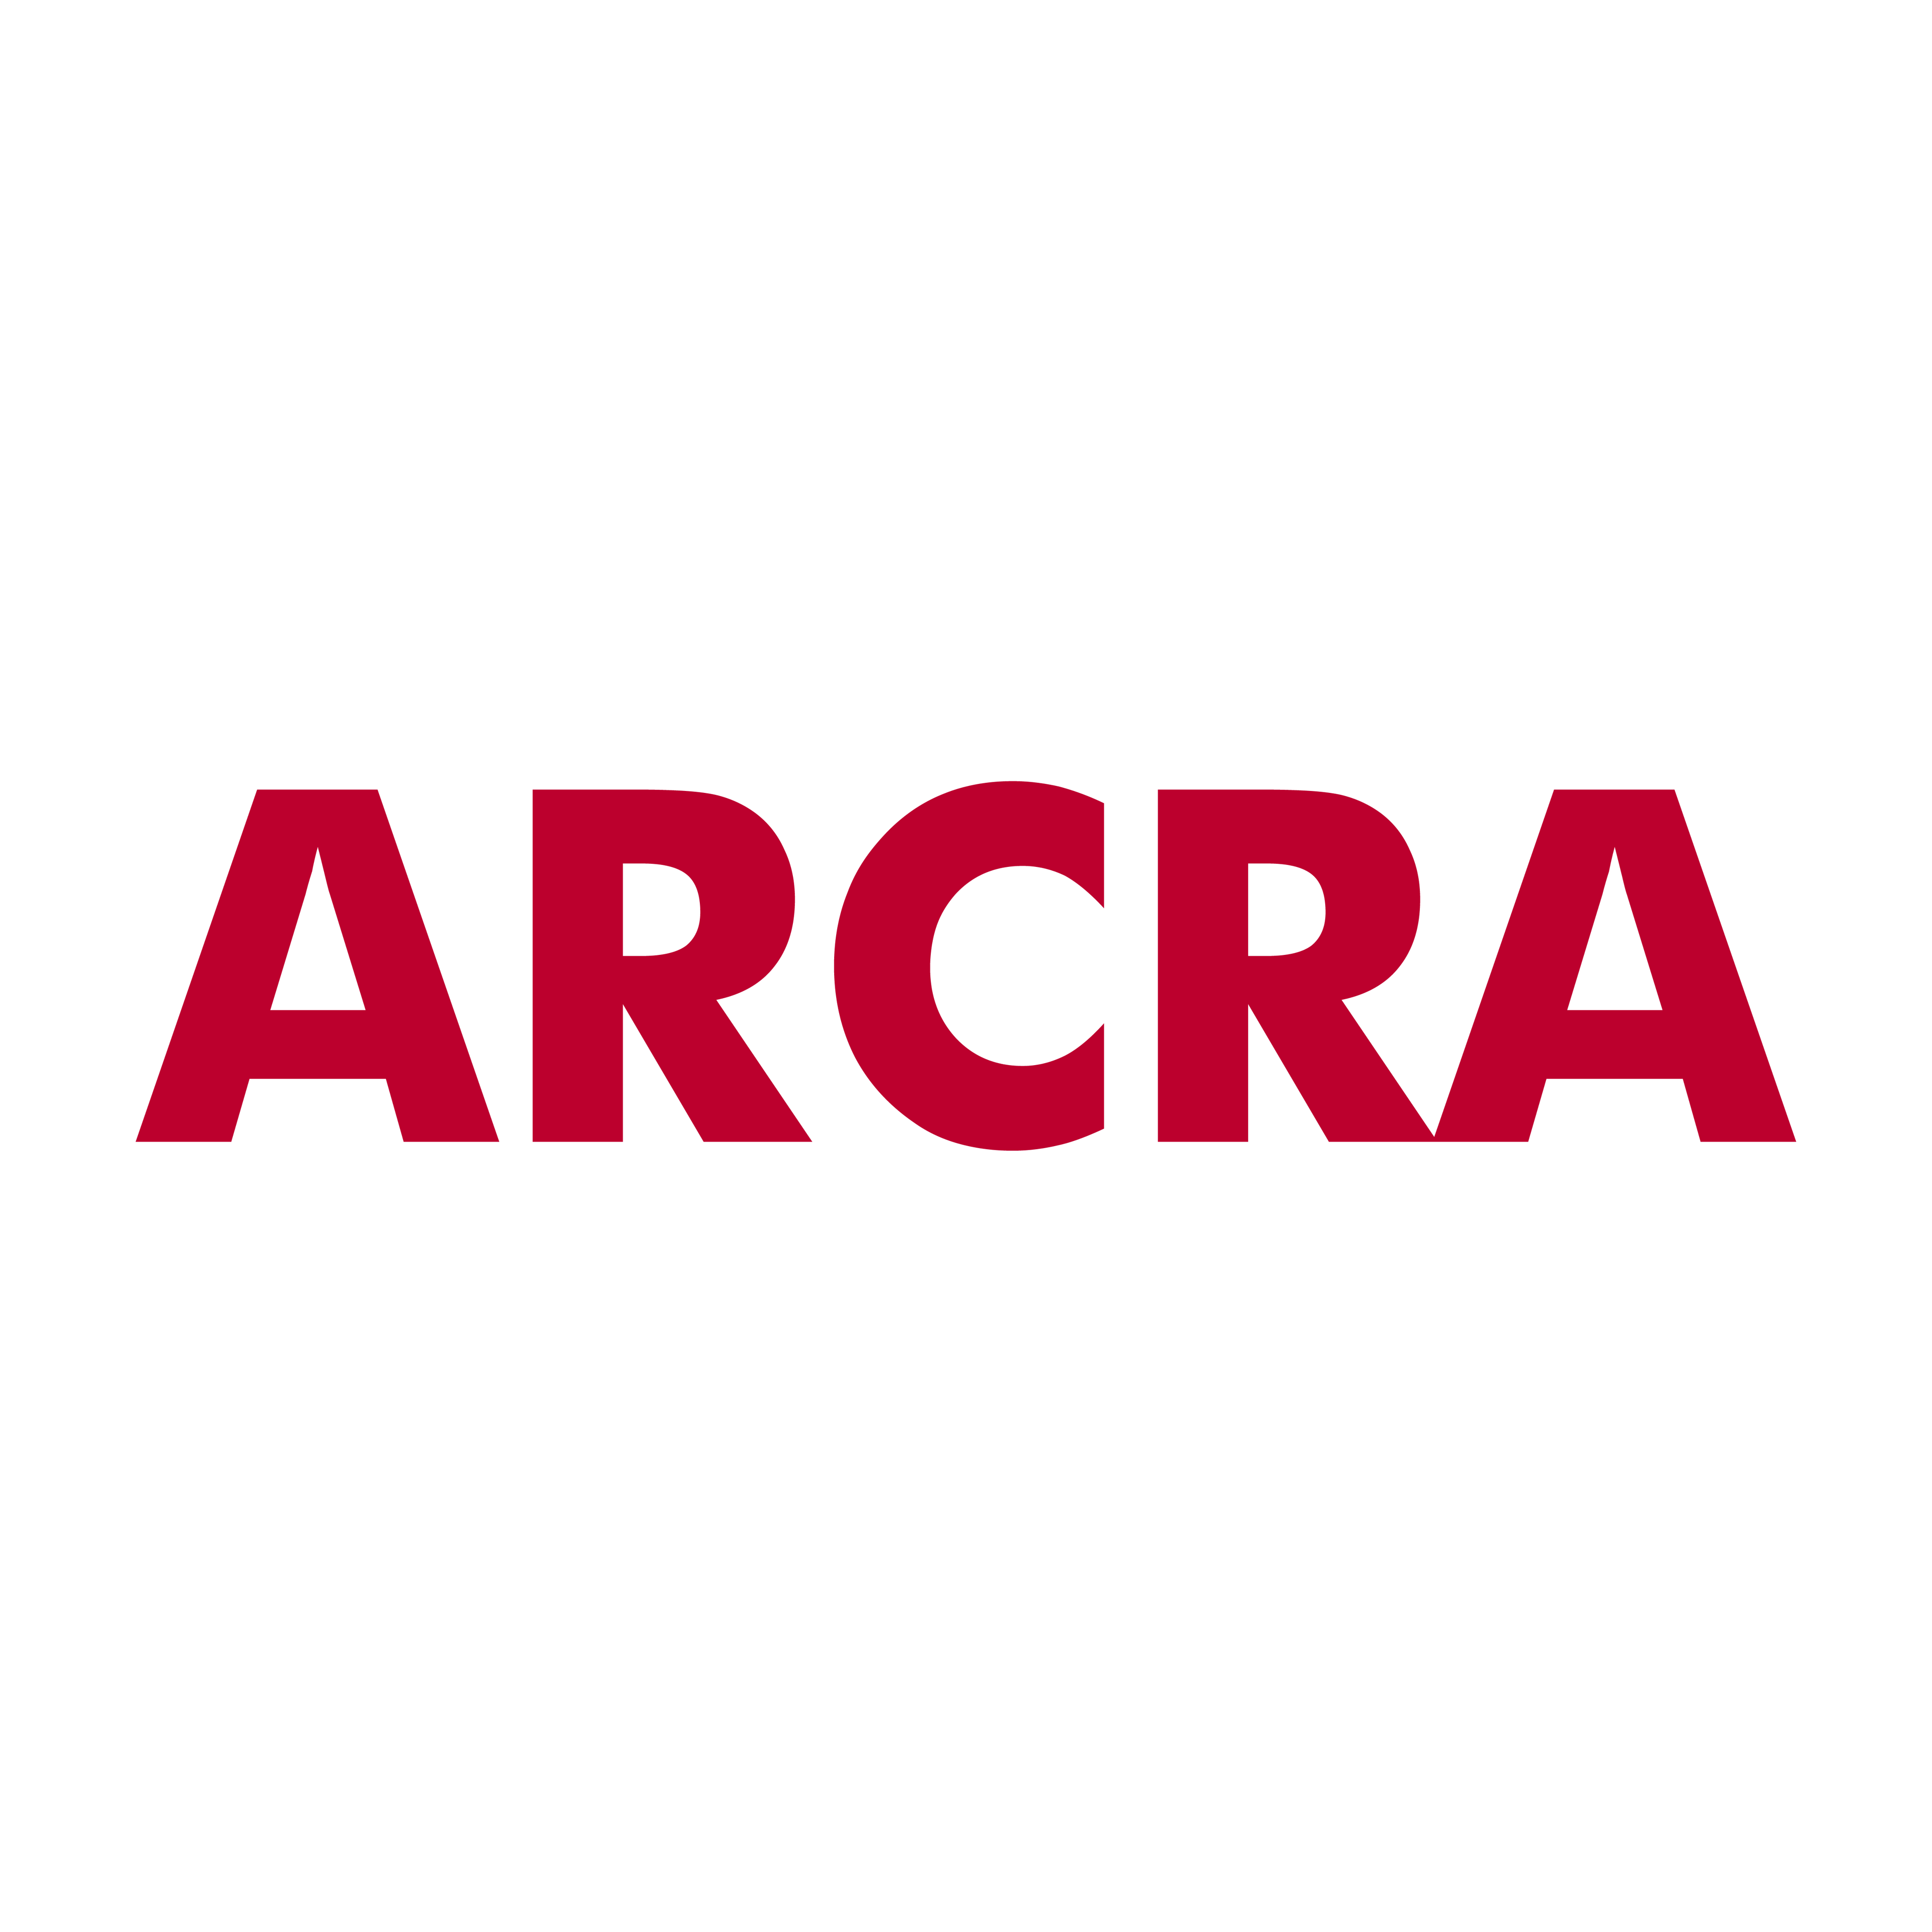 arcra-logo-text